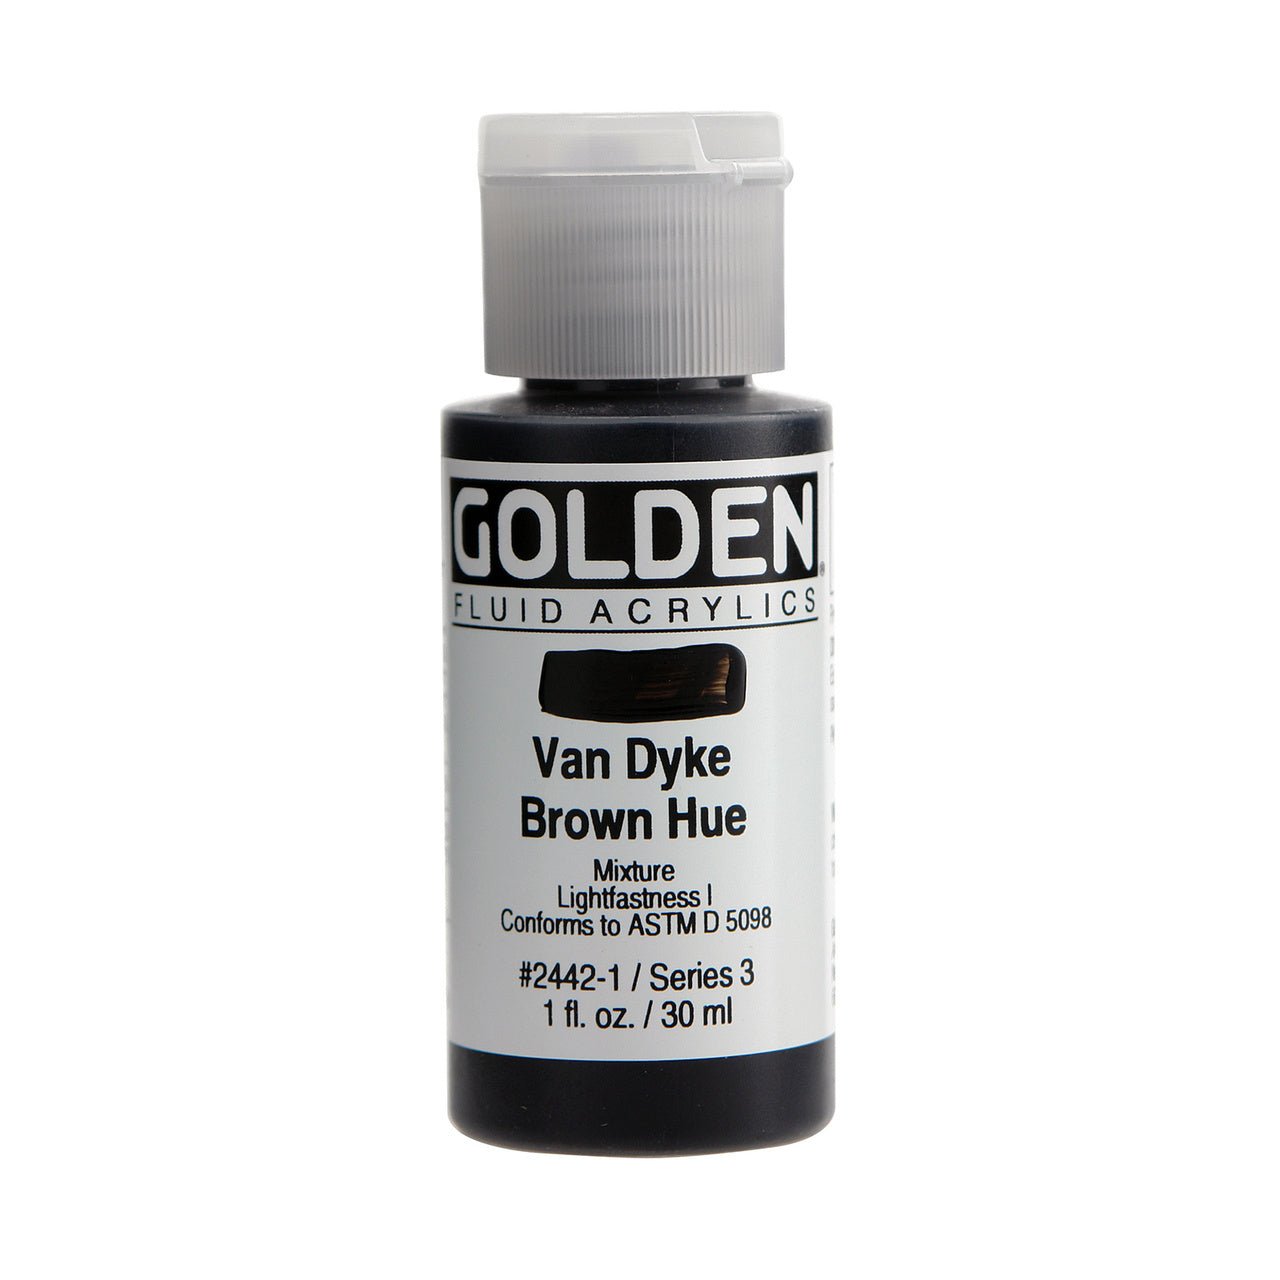 Golden Fluid Acrylic Van Dyke Brown Hue 1 oz - merriartist.com